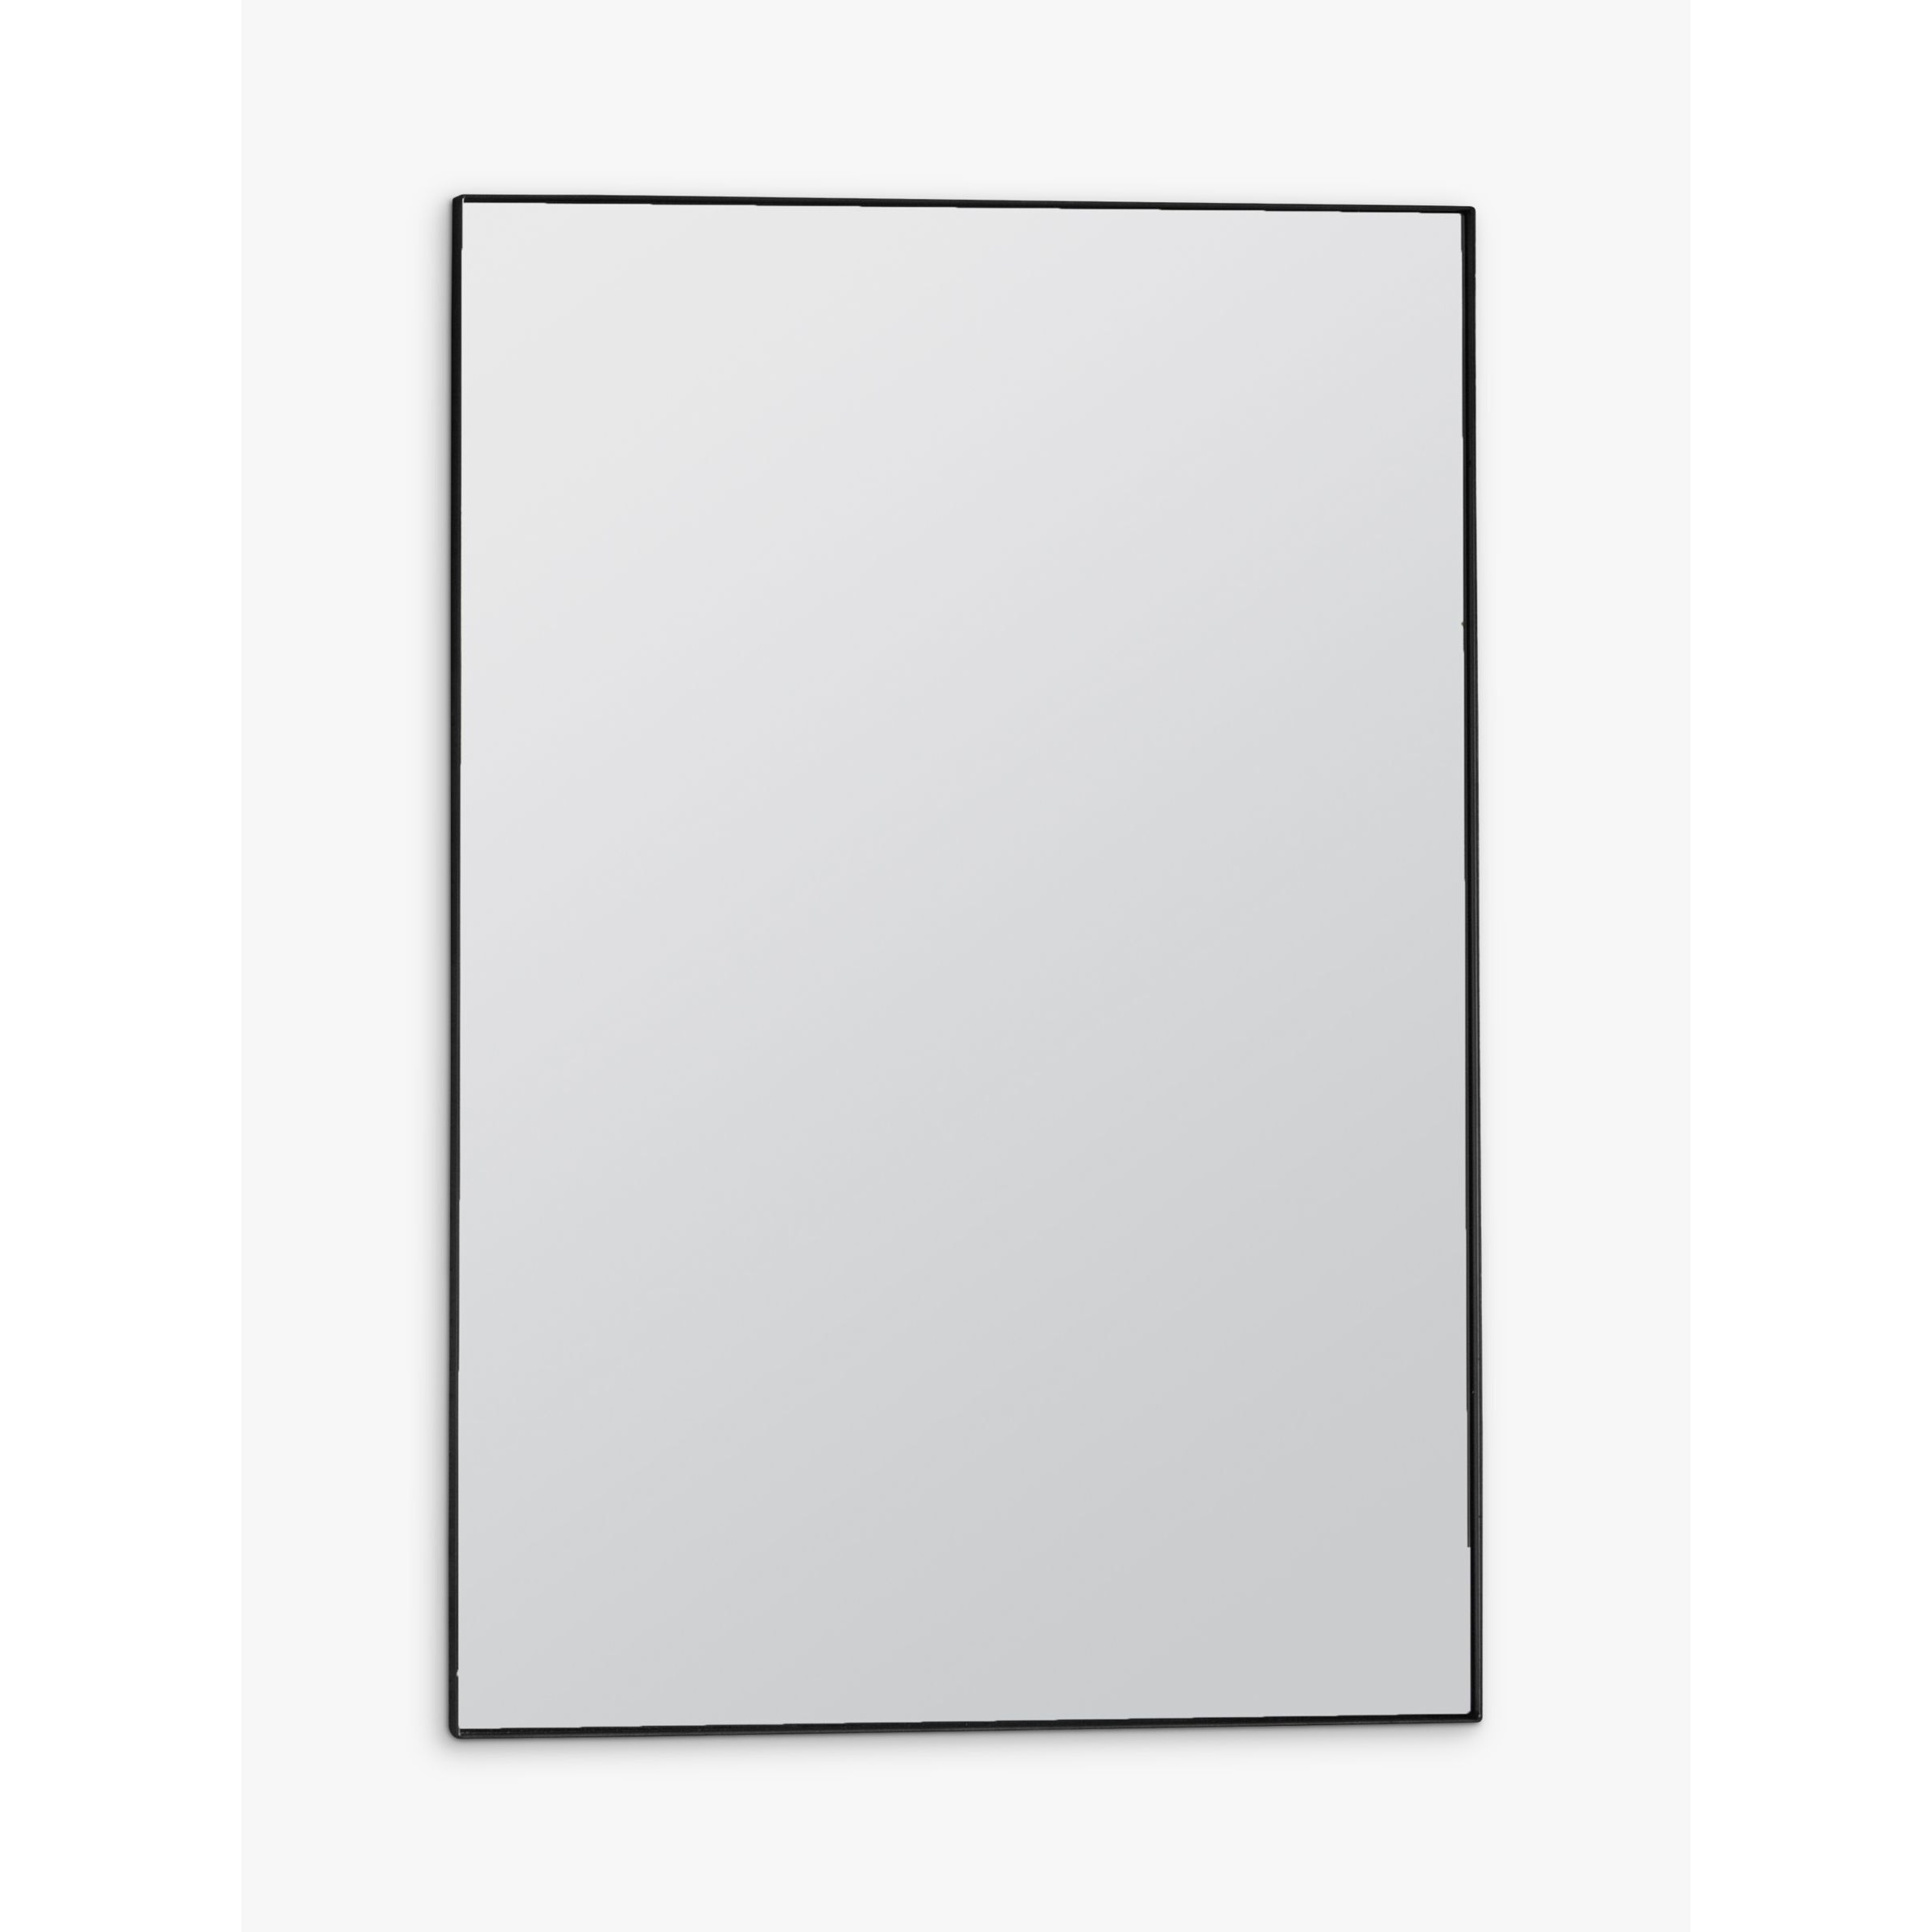 Gallery Direct Hurston Rectangular Metal Frame Wall Mirror - image 1